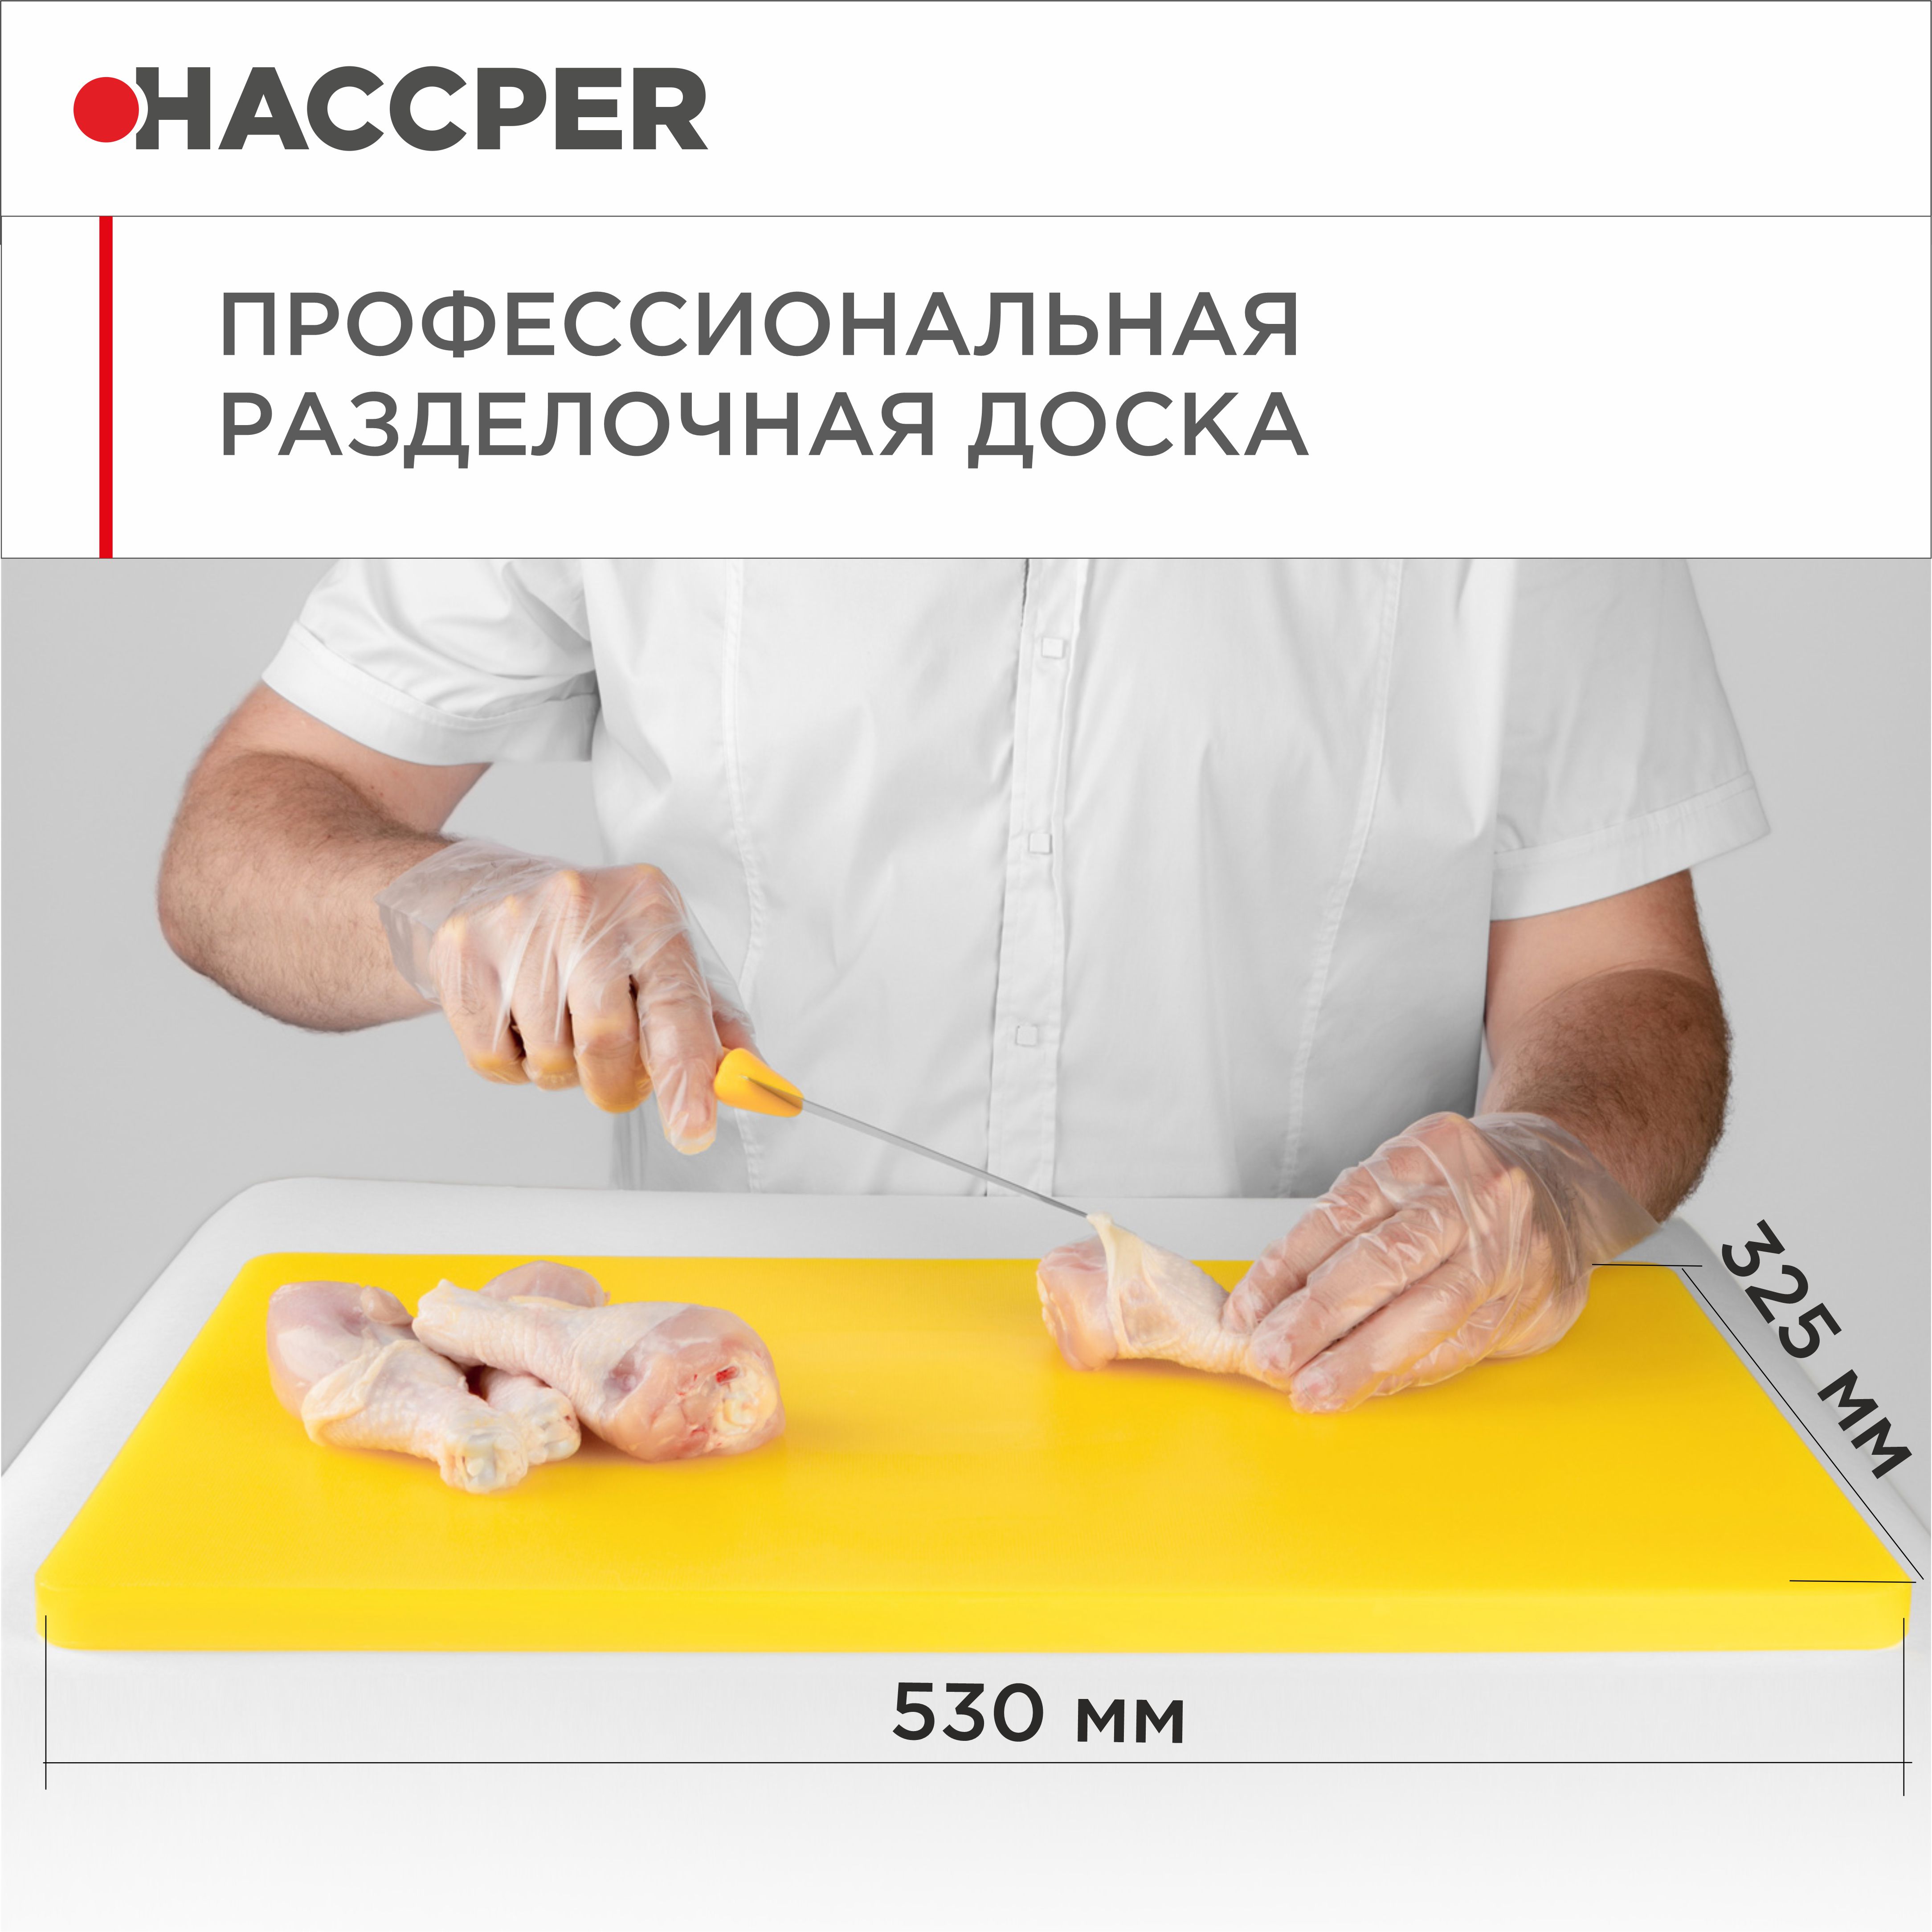 Профессиональная разделочная доска  HACCPER Gastra, желтая